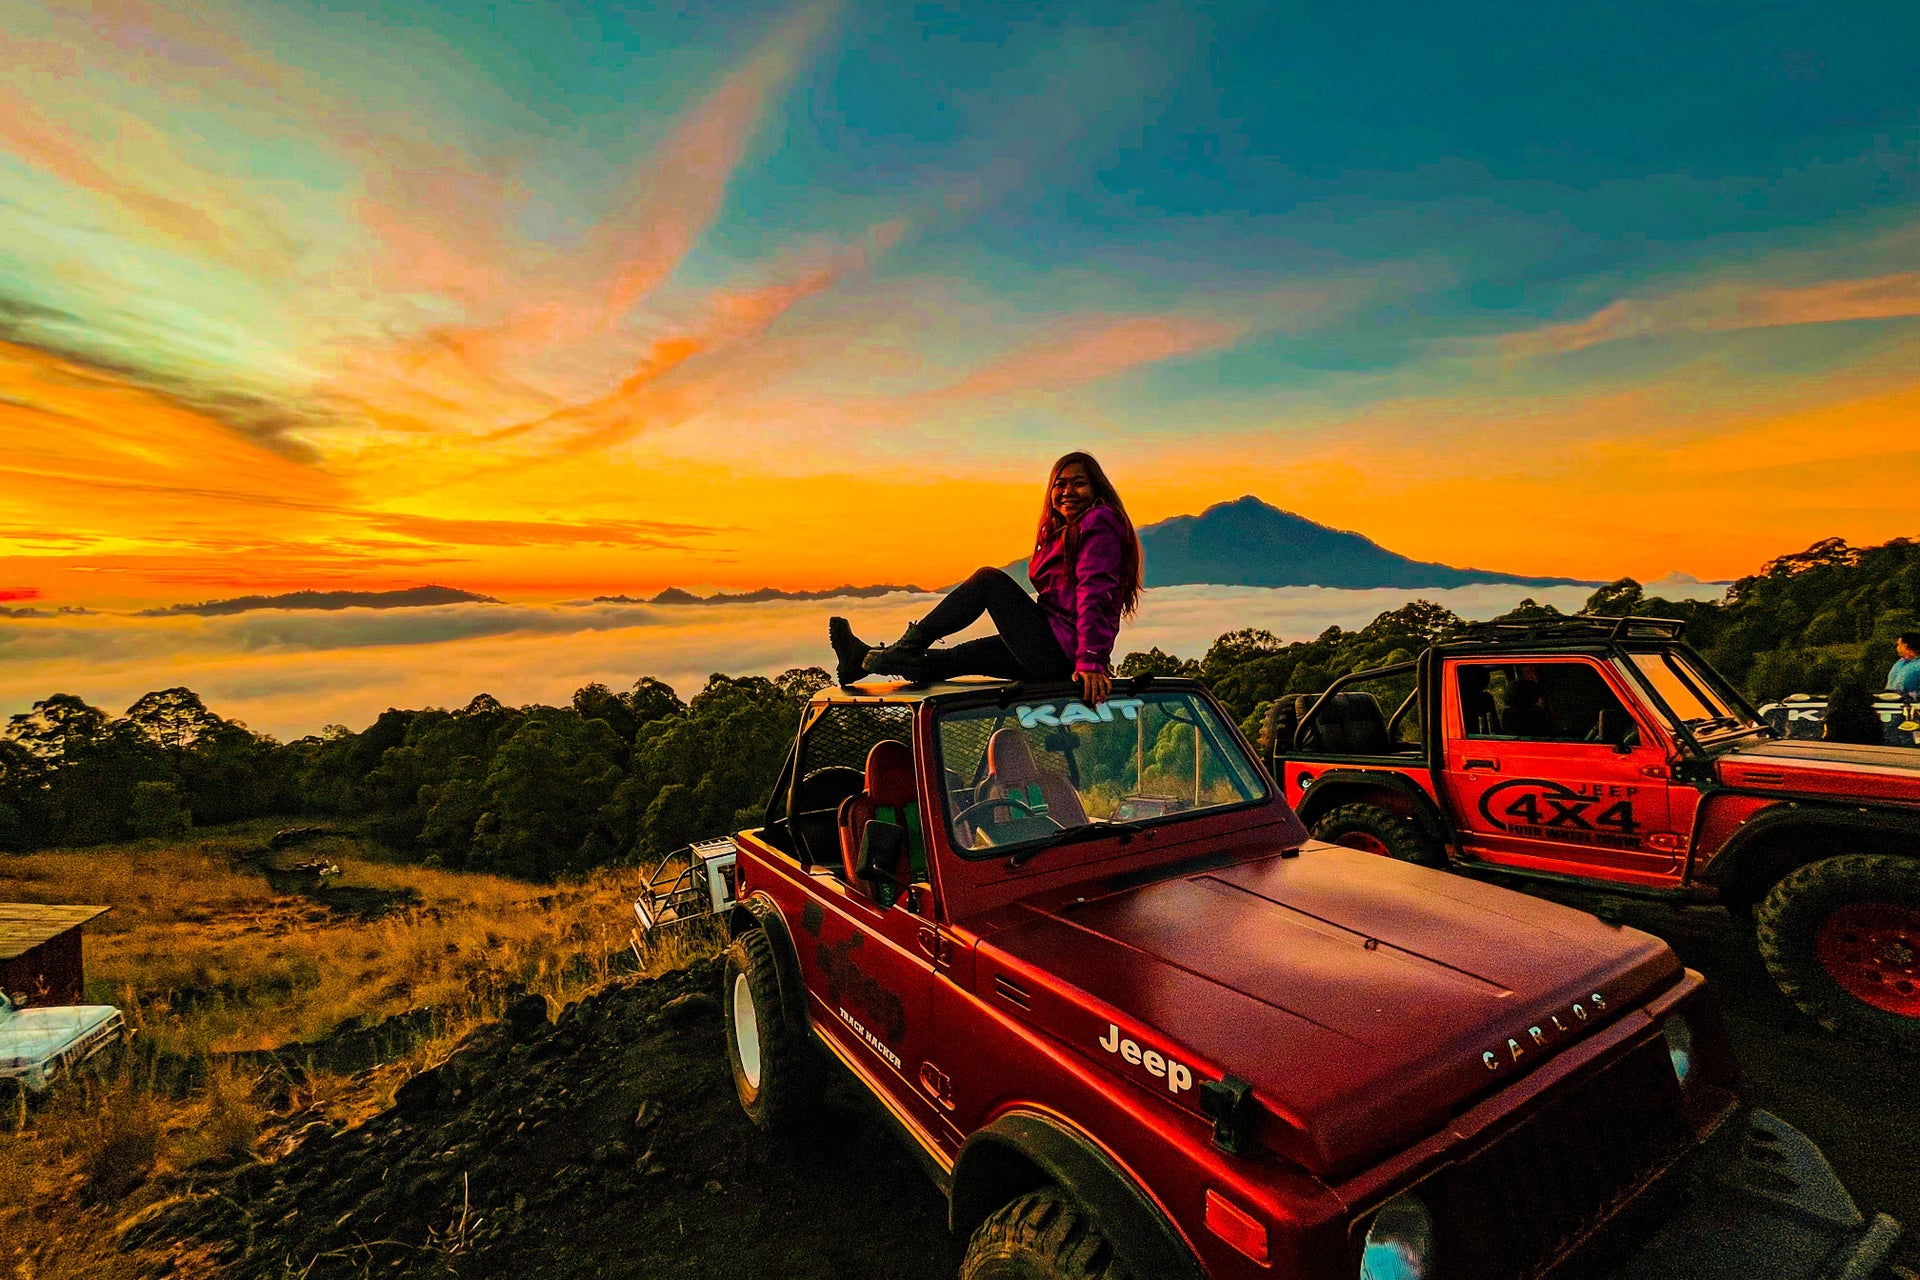 Mount Batur Sunrise 4x4 Tour